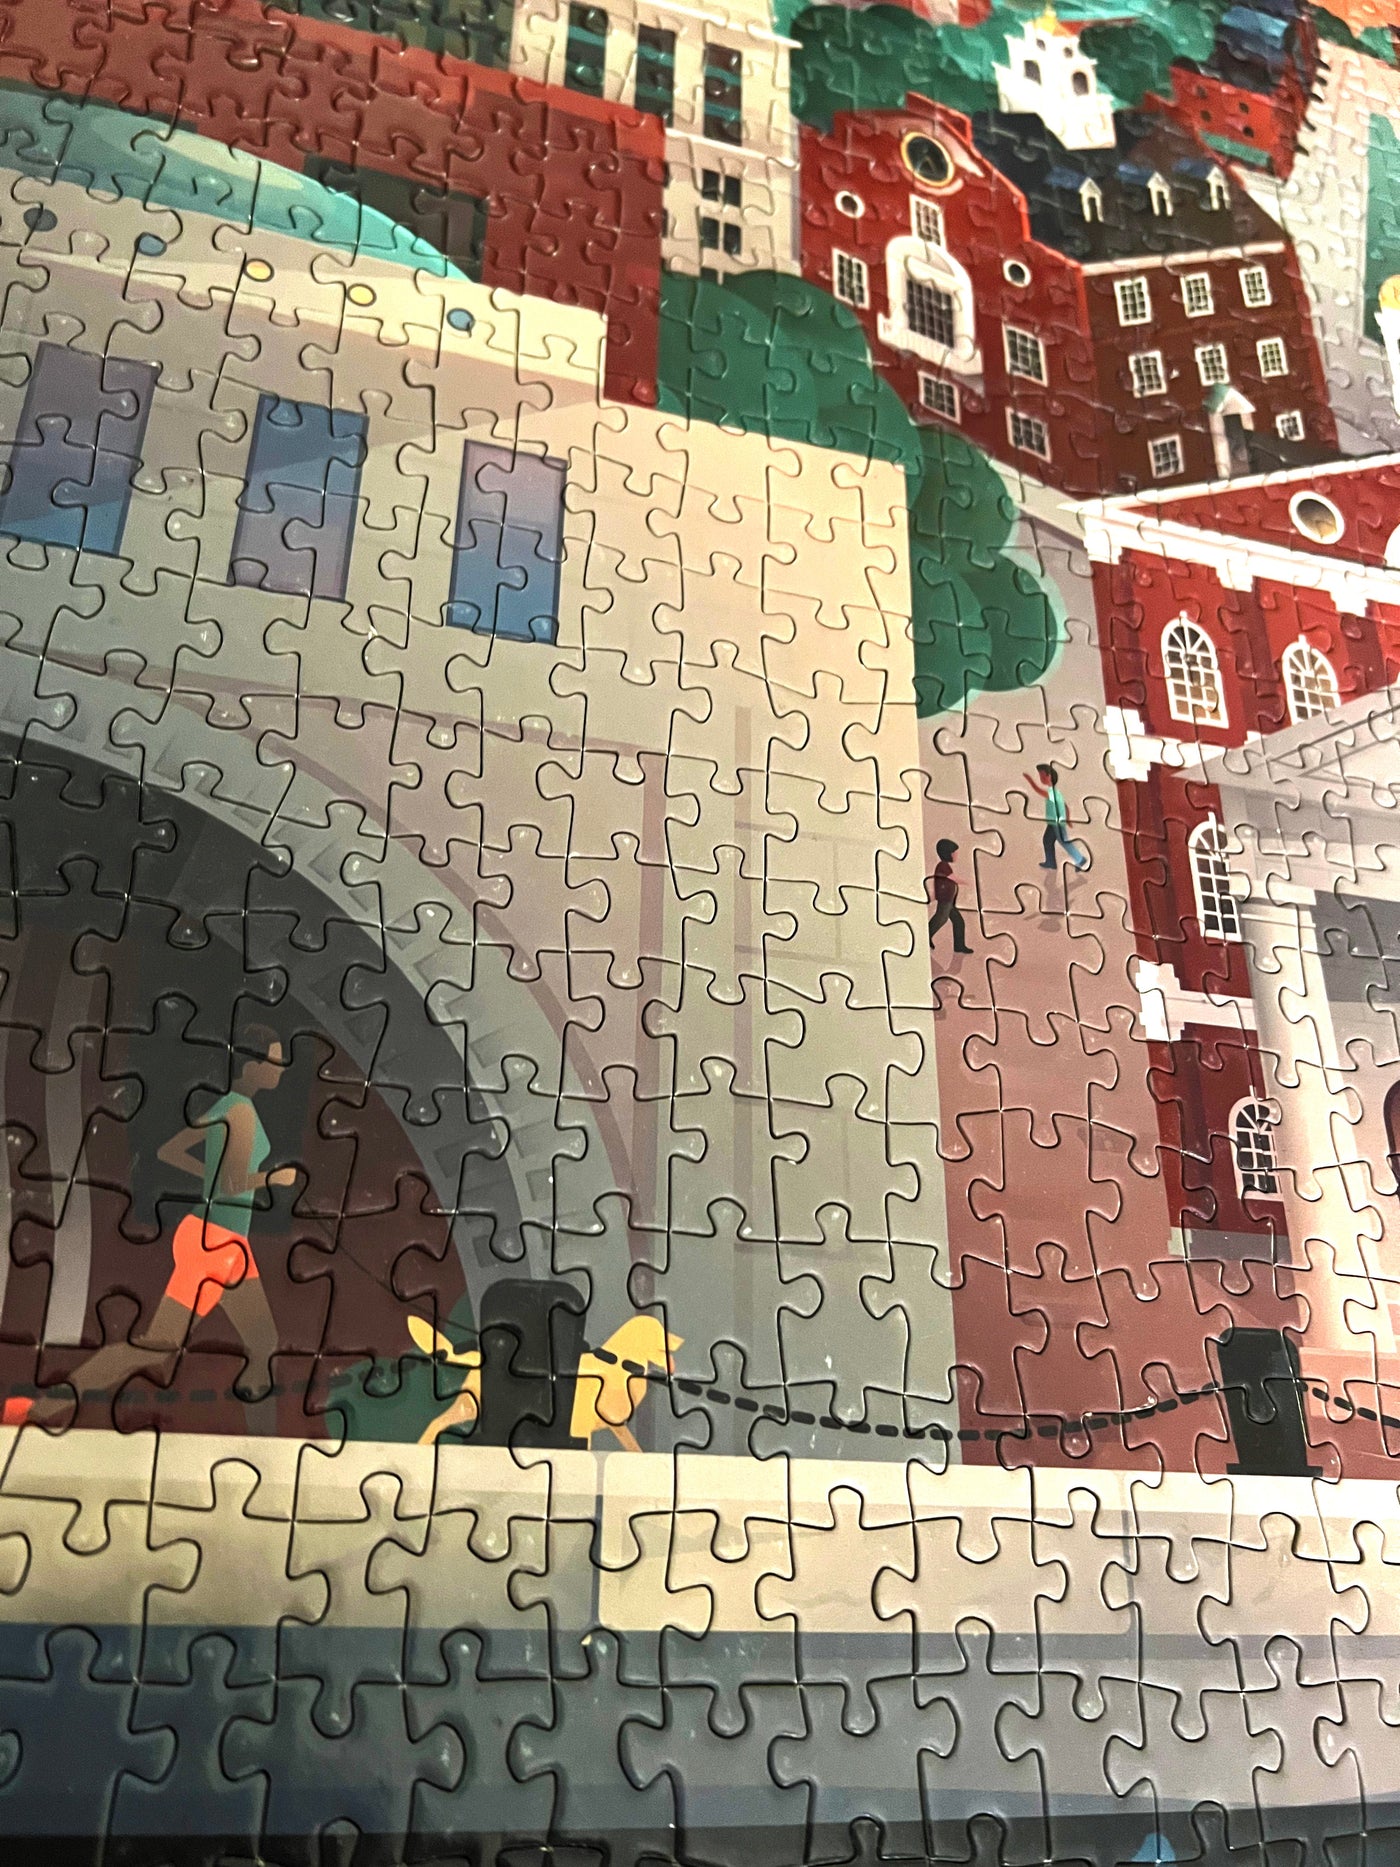 Boston, Massachusetts | 1000 Piece Jigsaw Puzzle